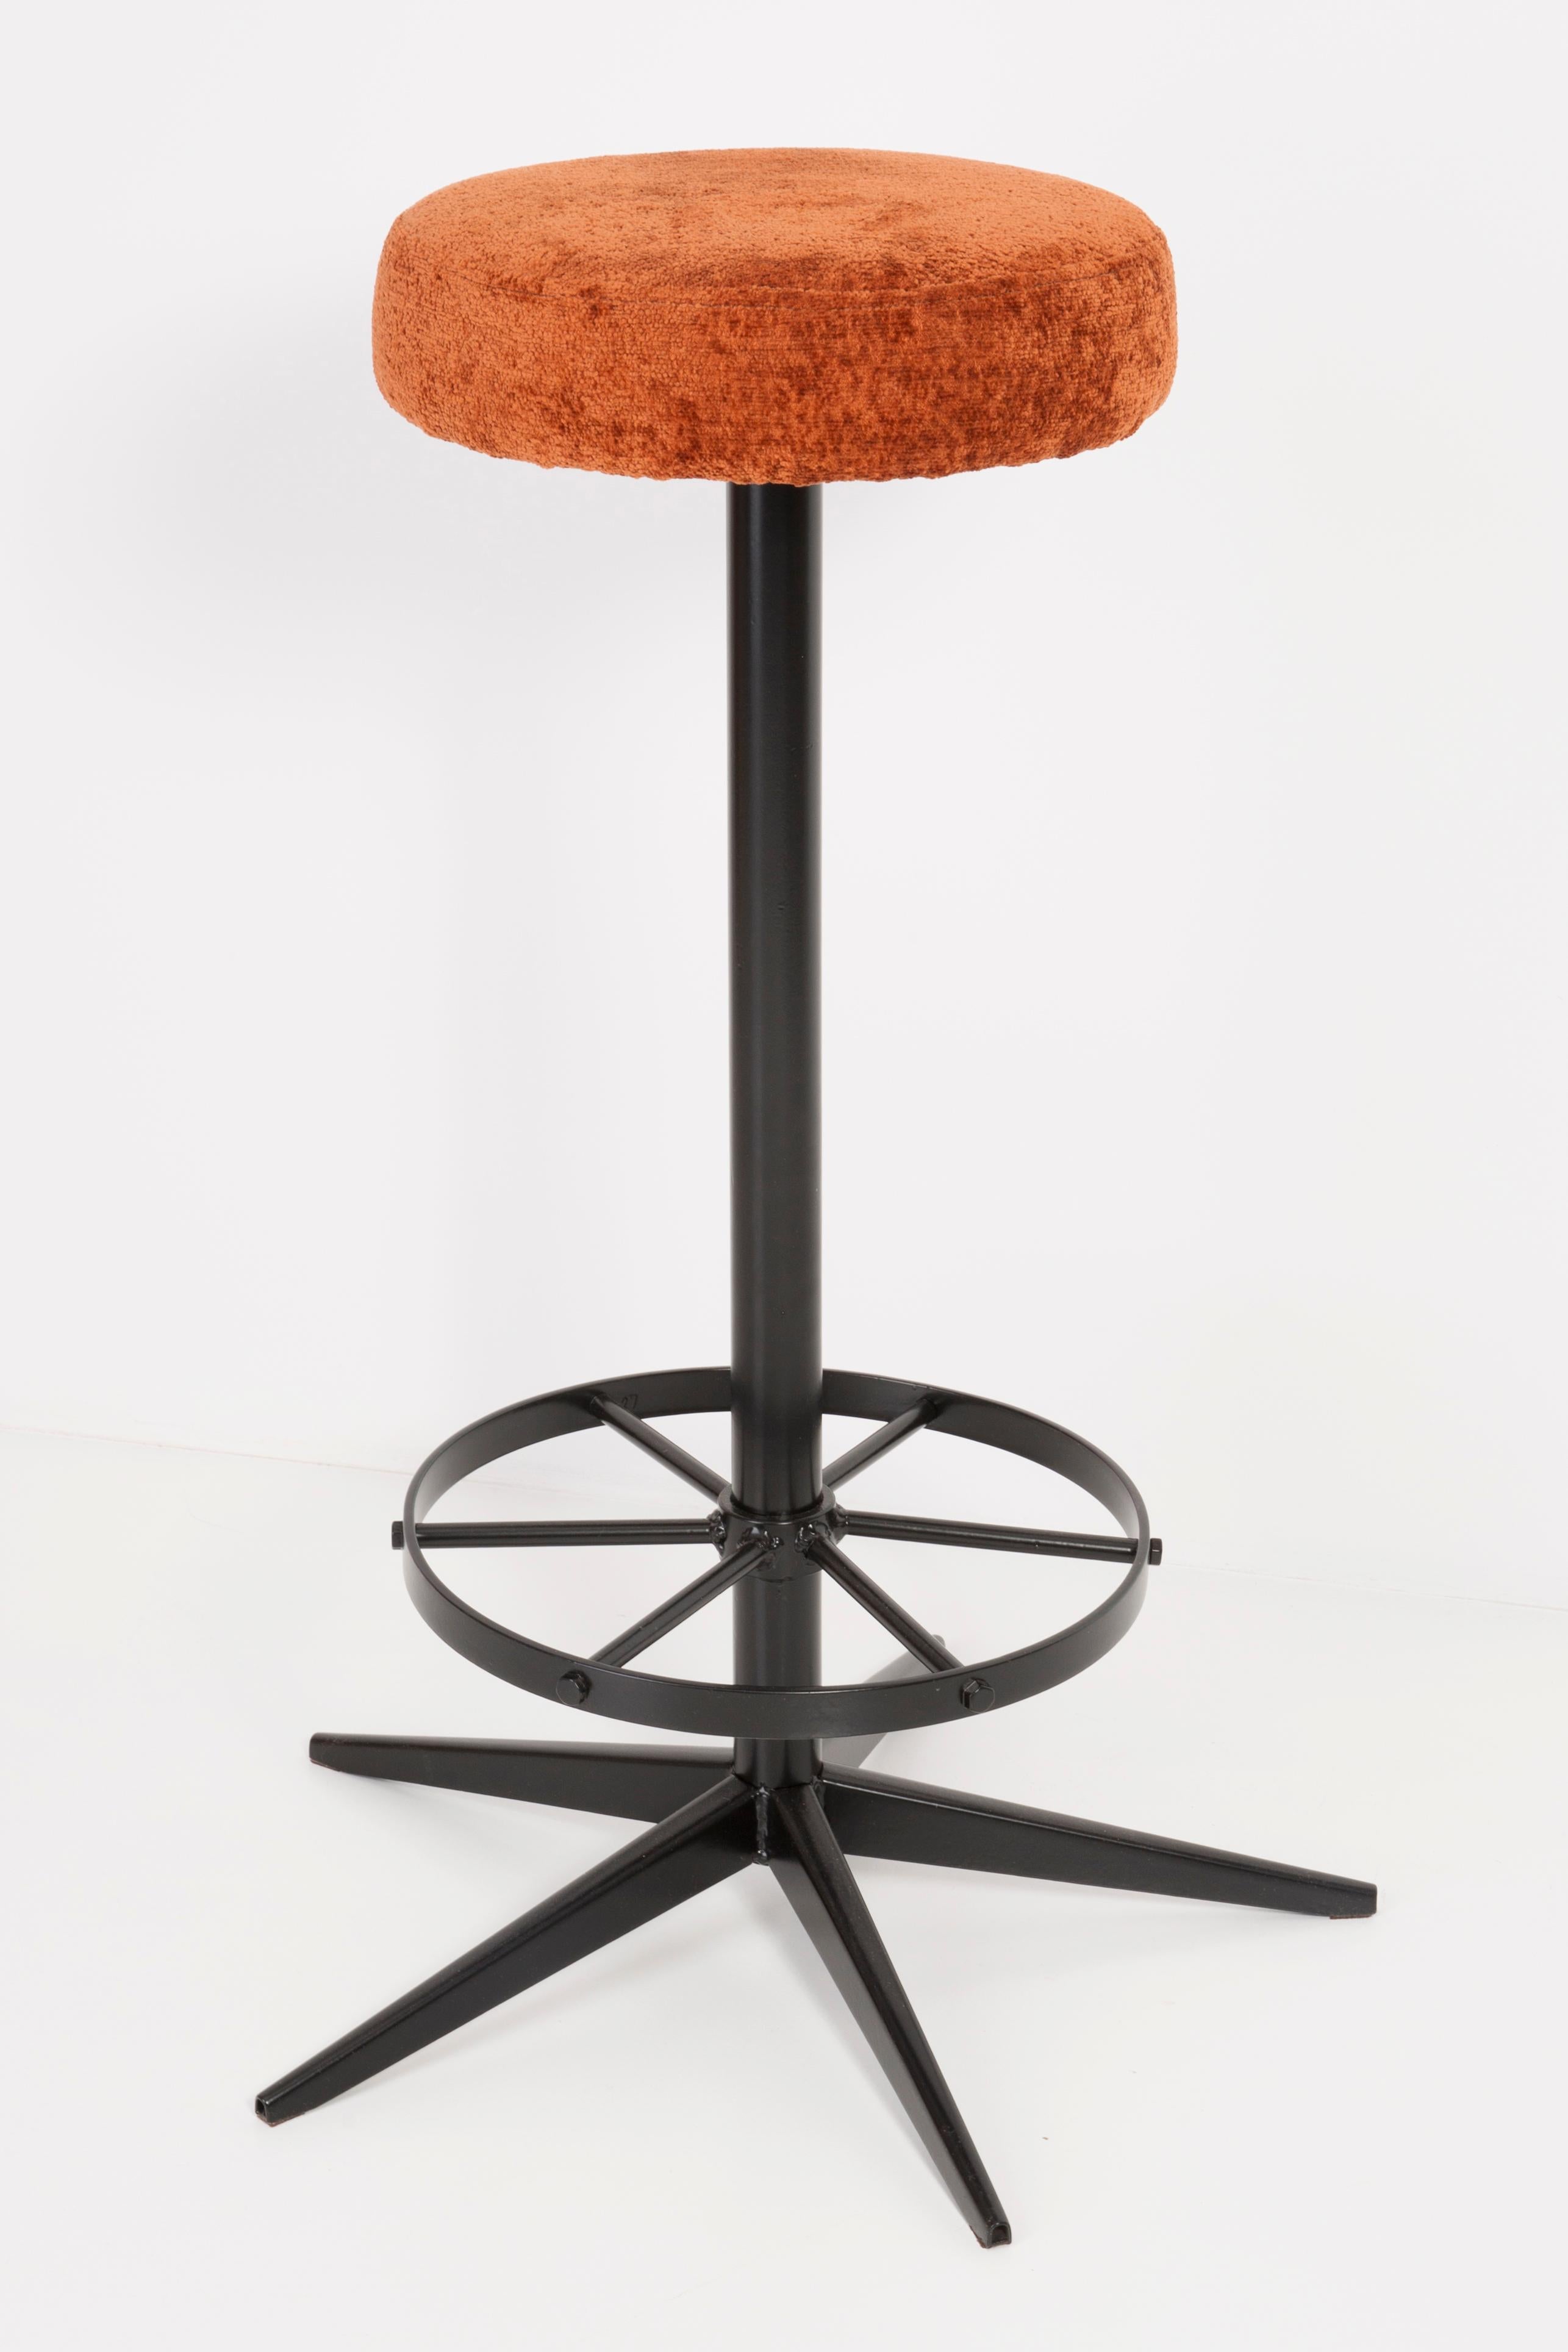 orange bar stools set of 4